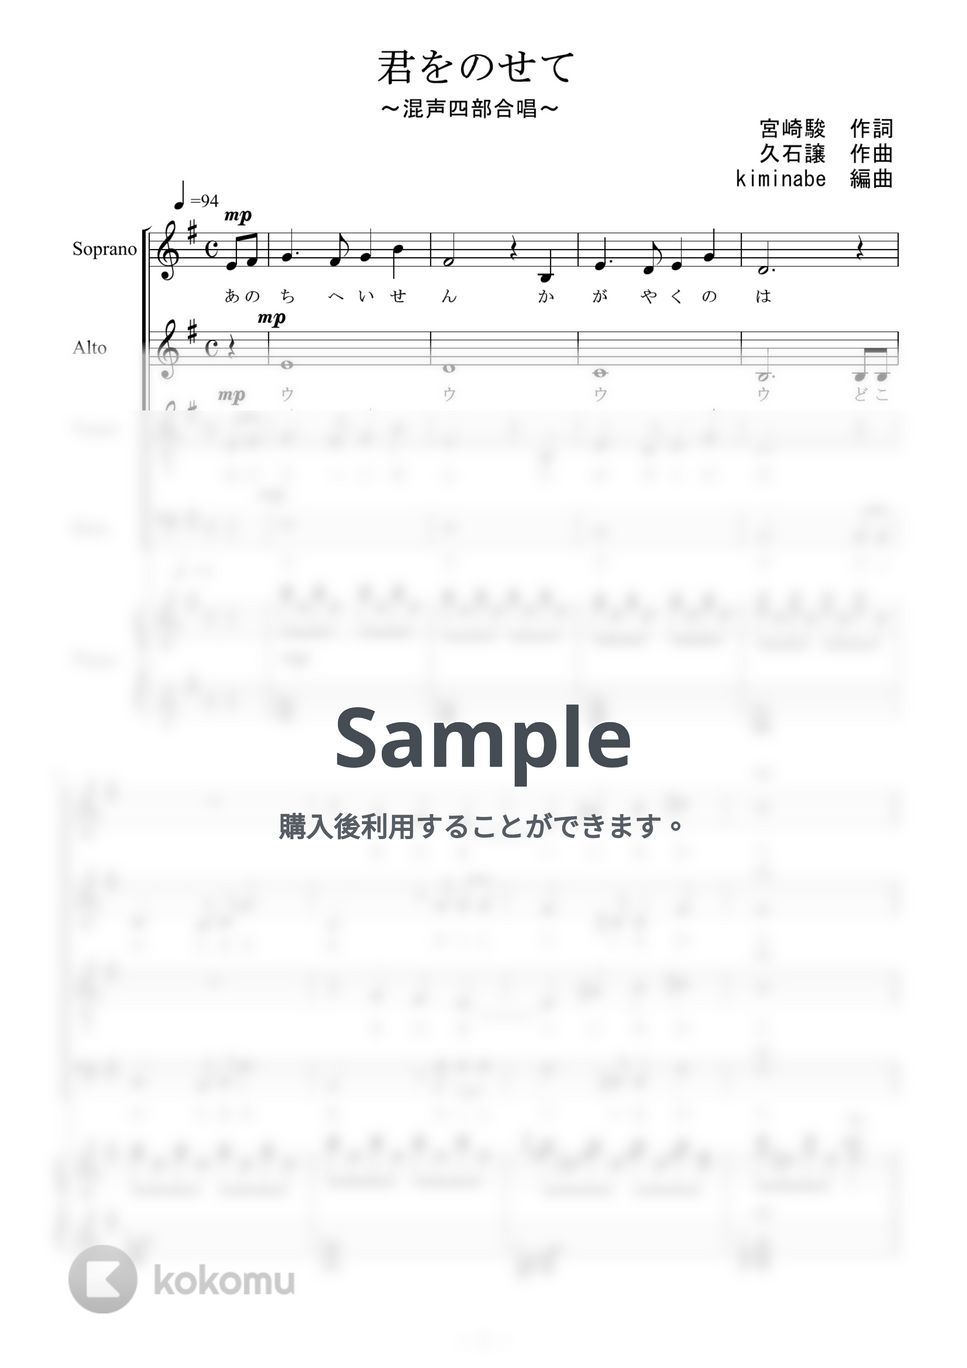 天空の城ラピュタ - 君をのせて (混声四部合唱) by kiminabe